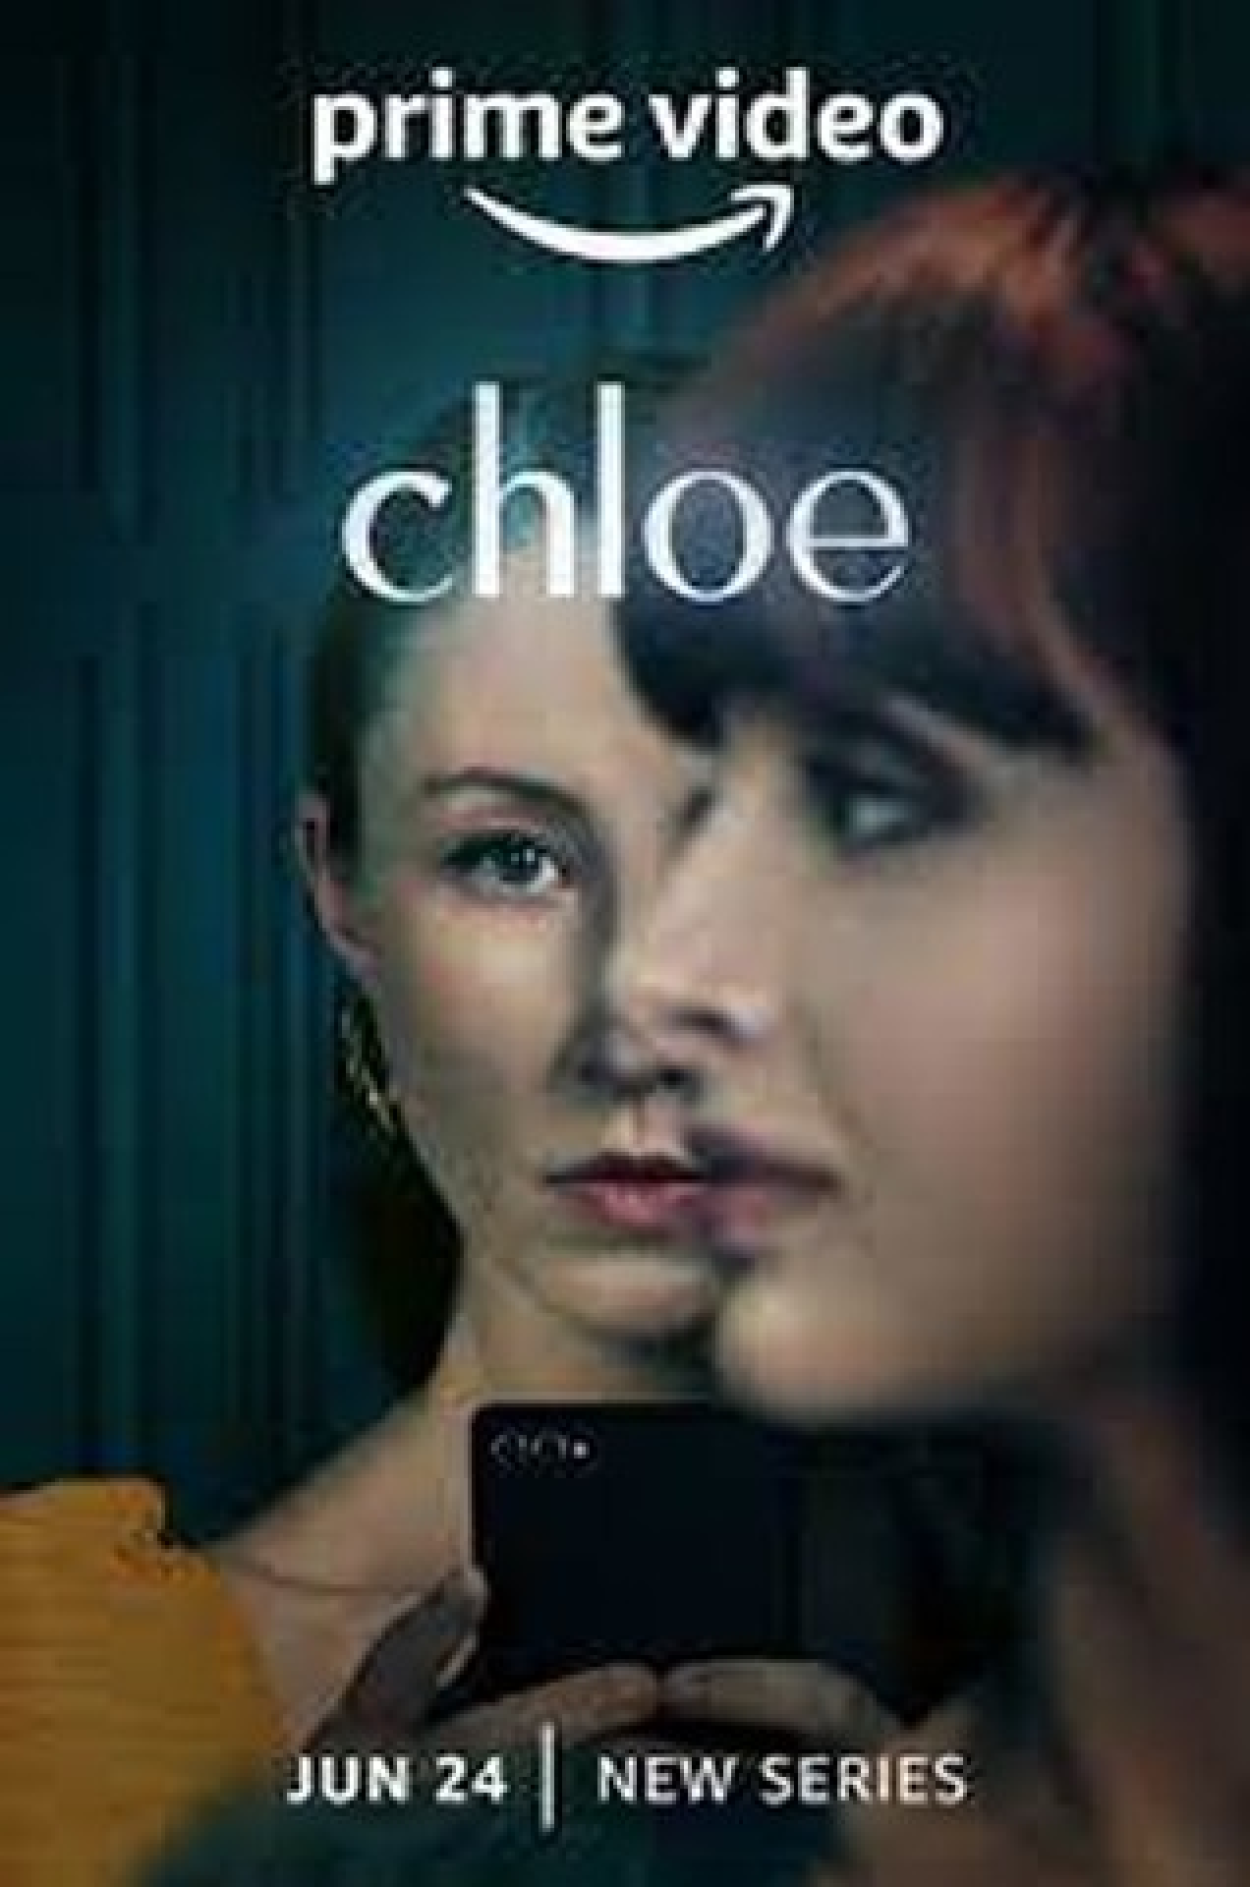 Filmes, séries e curtas de Chloë Grace Moretz - Filmin